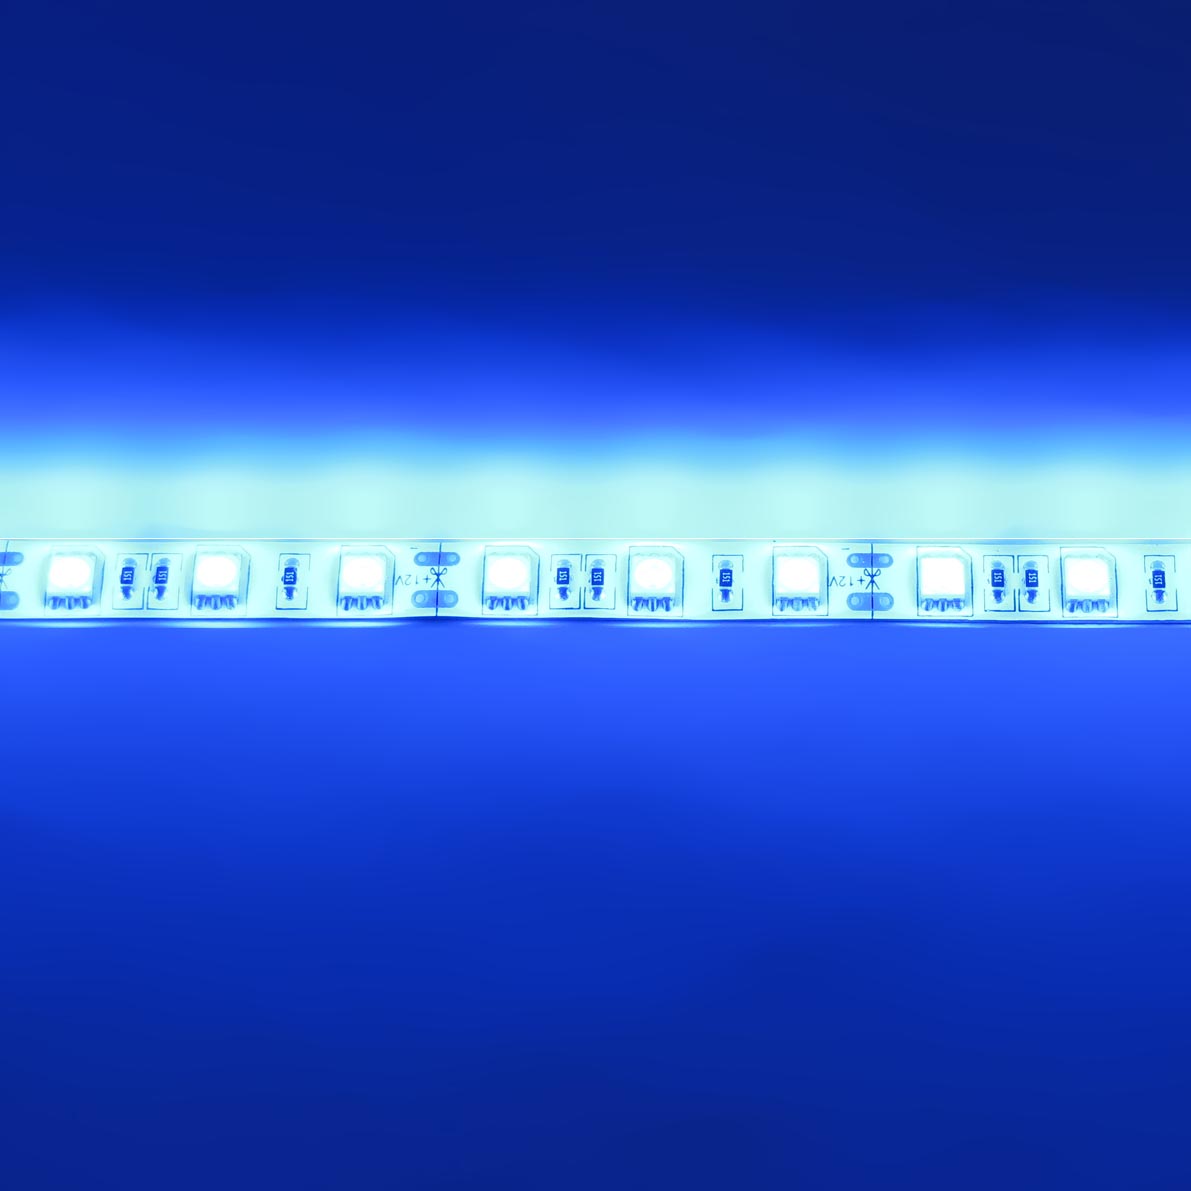 светодиодная лента standart class, 5050, 60led/m, blue, 12v, ip65, артикул 52720